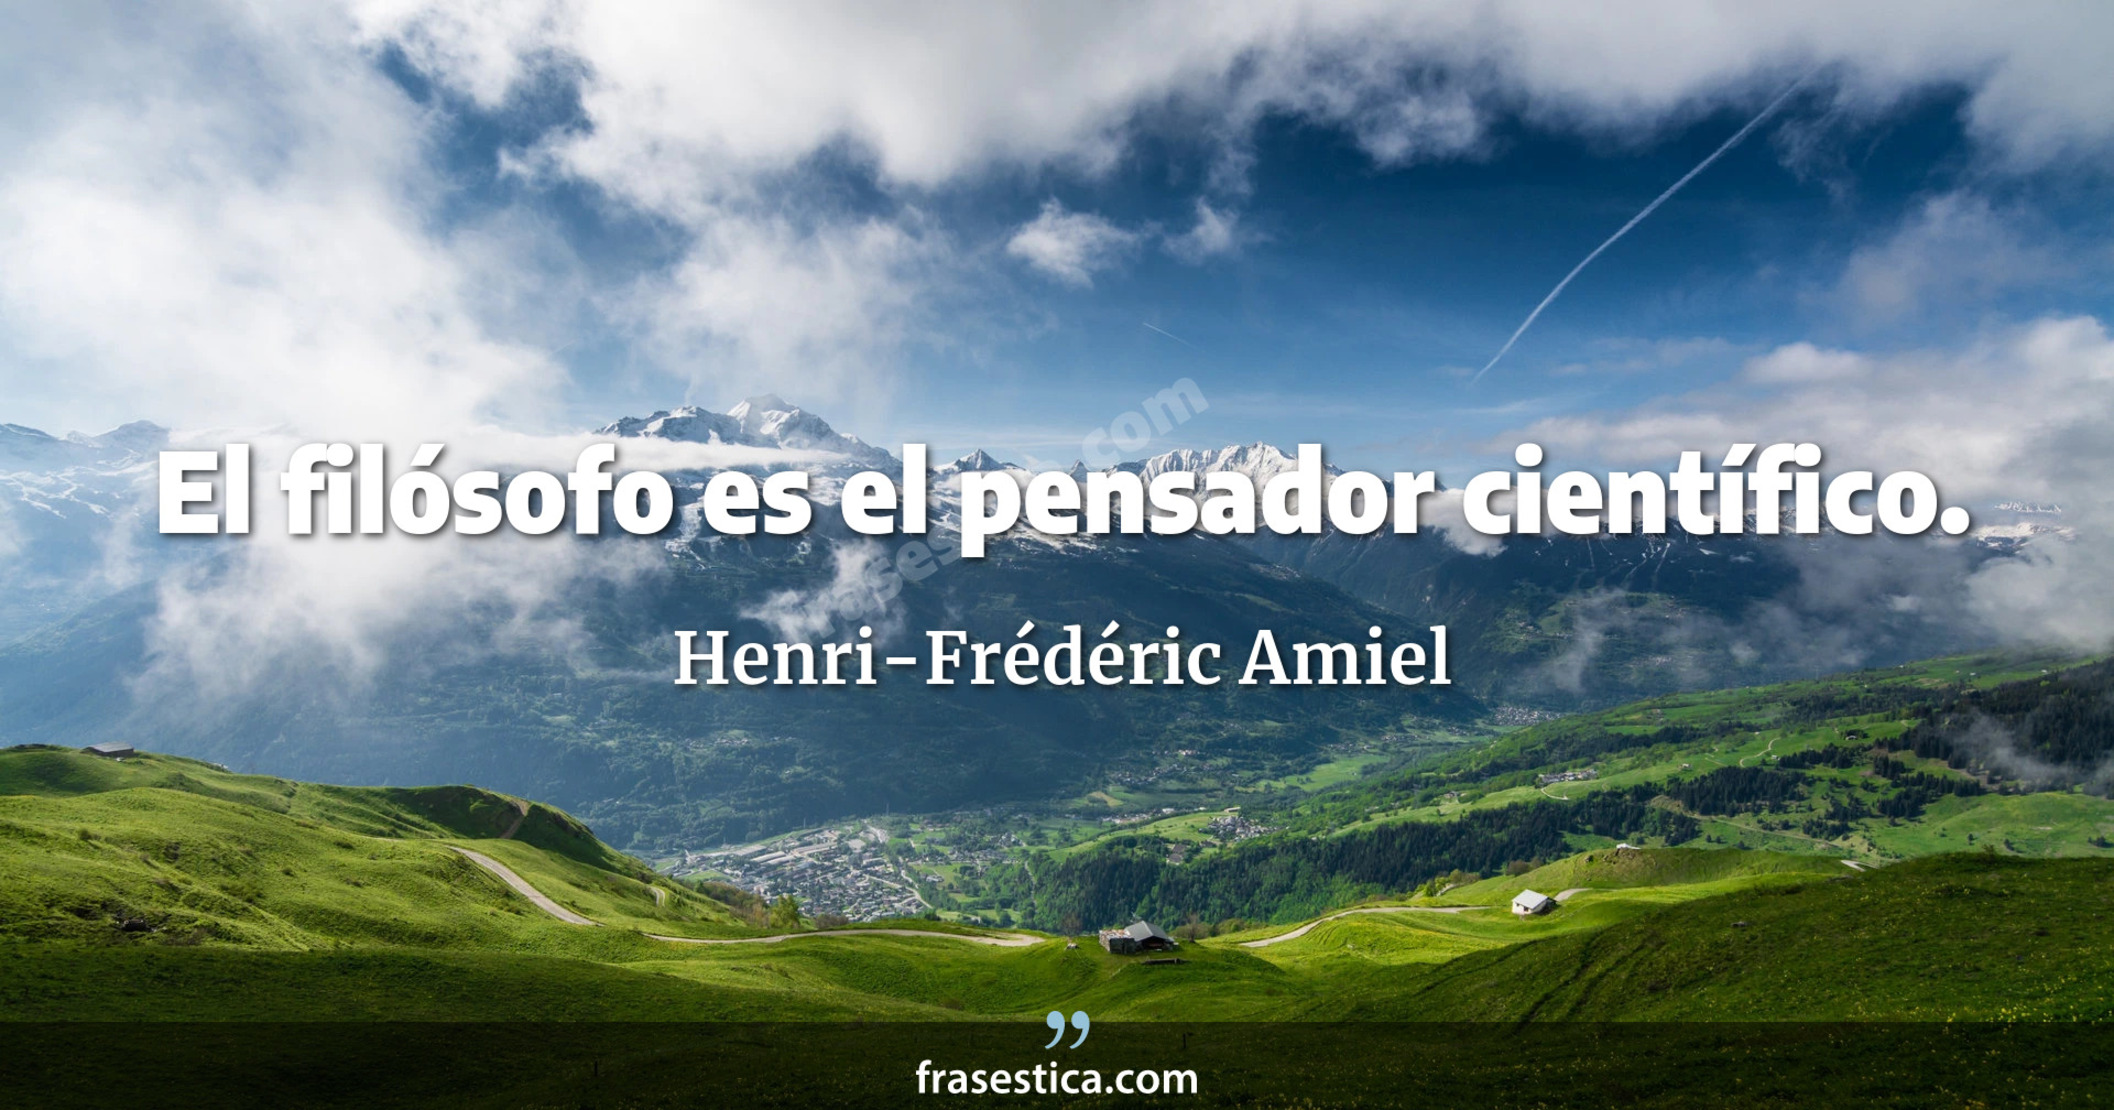 El filósofo es el pensador científico. - Henri-Frédéric Amiel